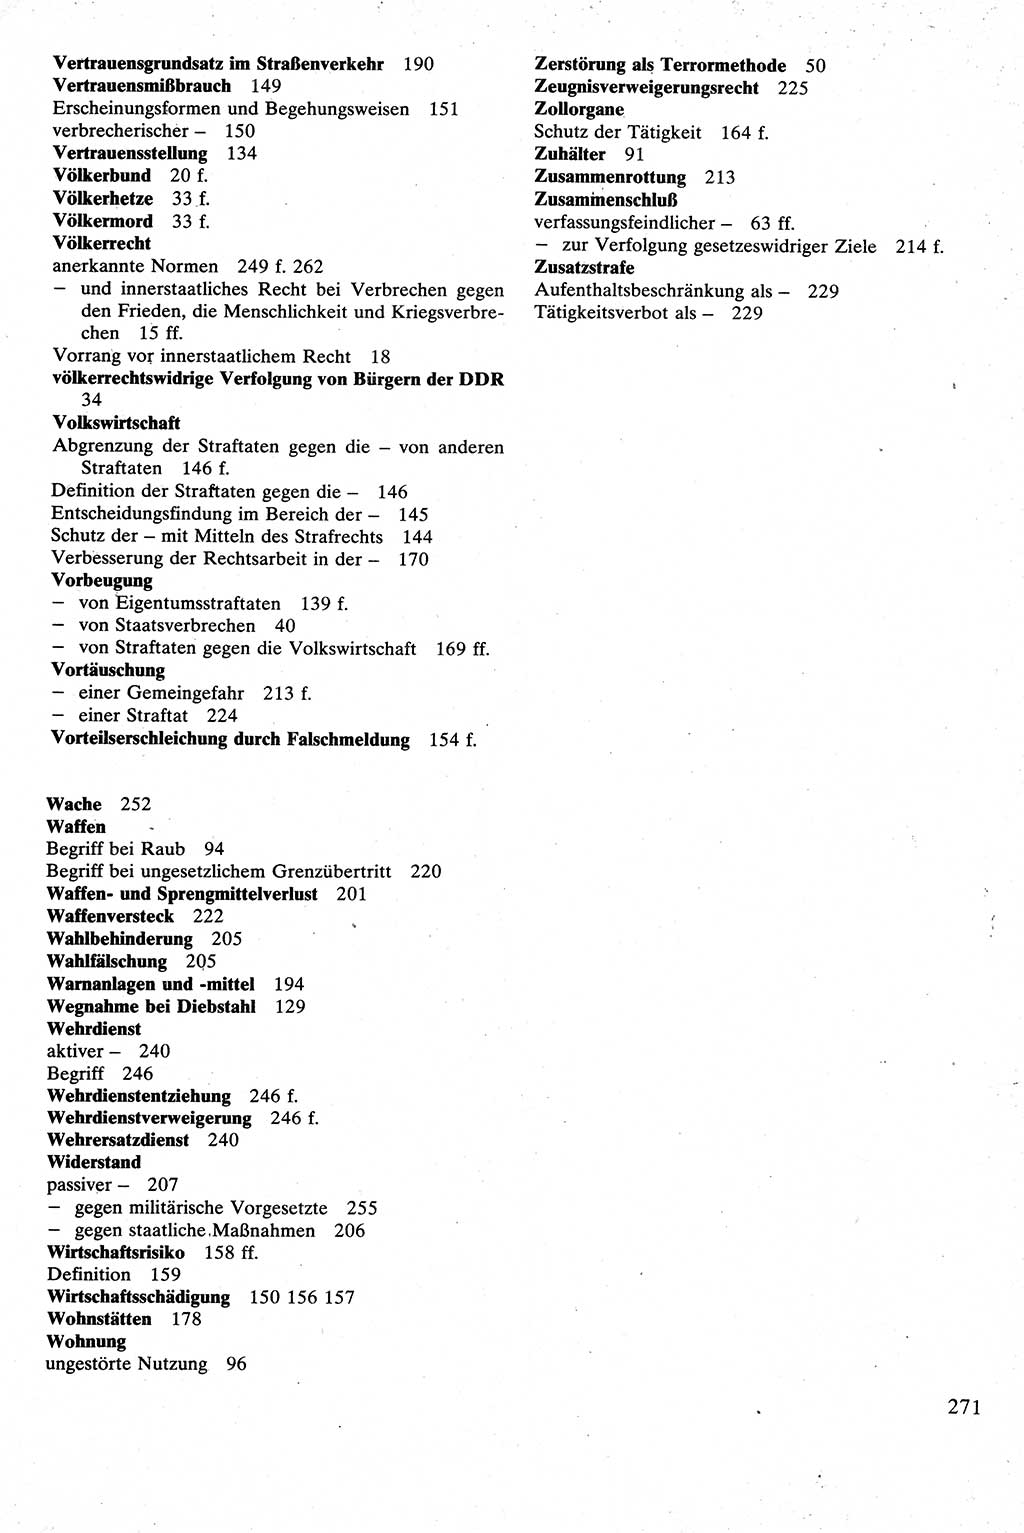 Strafrecht [Deutsche Demokratische Republik (DDR)], Besonderer Teil, Lehrbuch 1981, Seite 271 (Strafr. DDR BT Lb. 1981, S. 271)